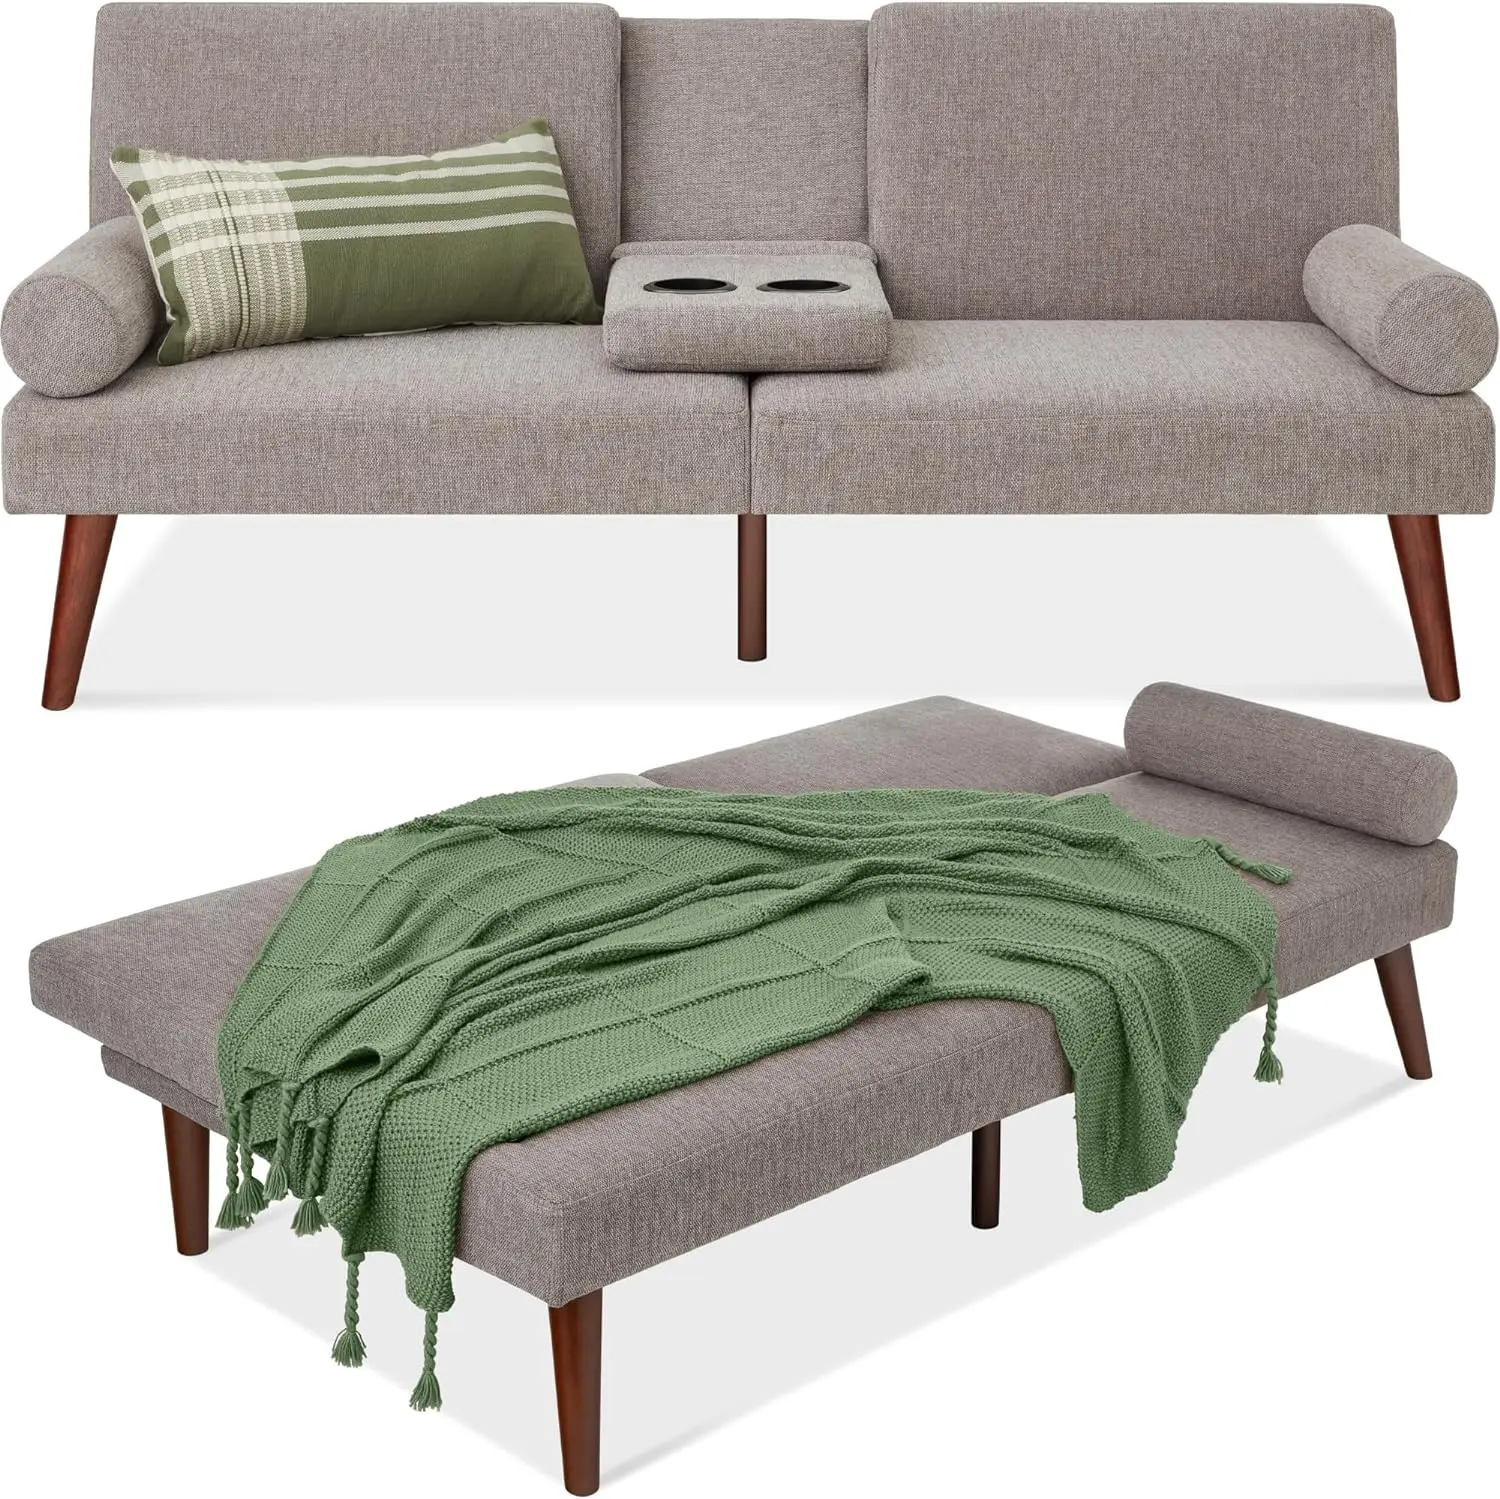 Futón tapizado moderno de mediados de siglo, sofá cama plegable Convertible, sofá pequeño con reposabrazos redondeados, 2 portavasos